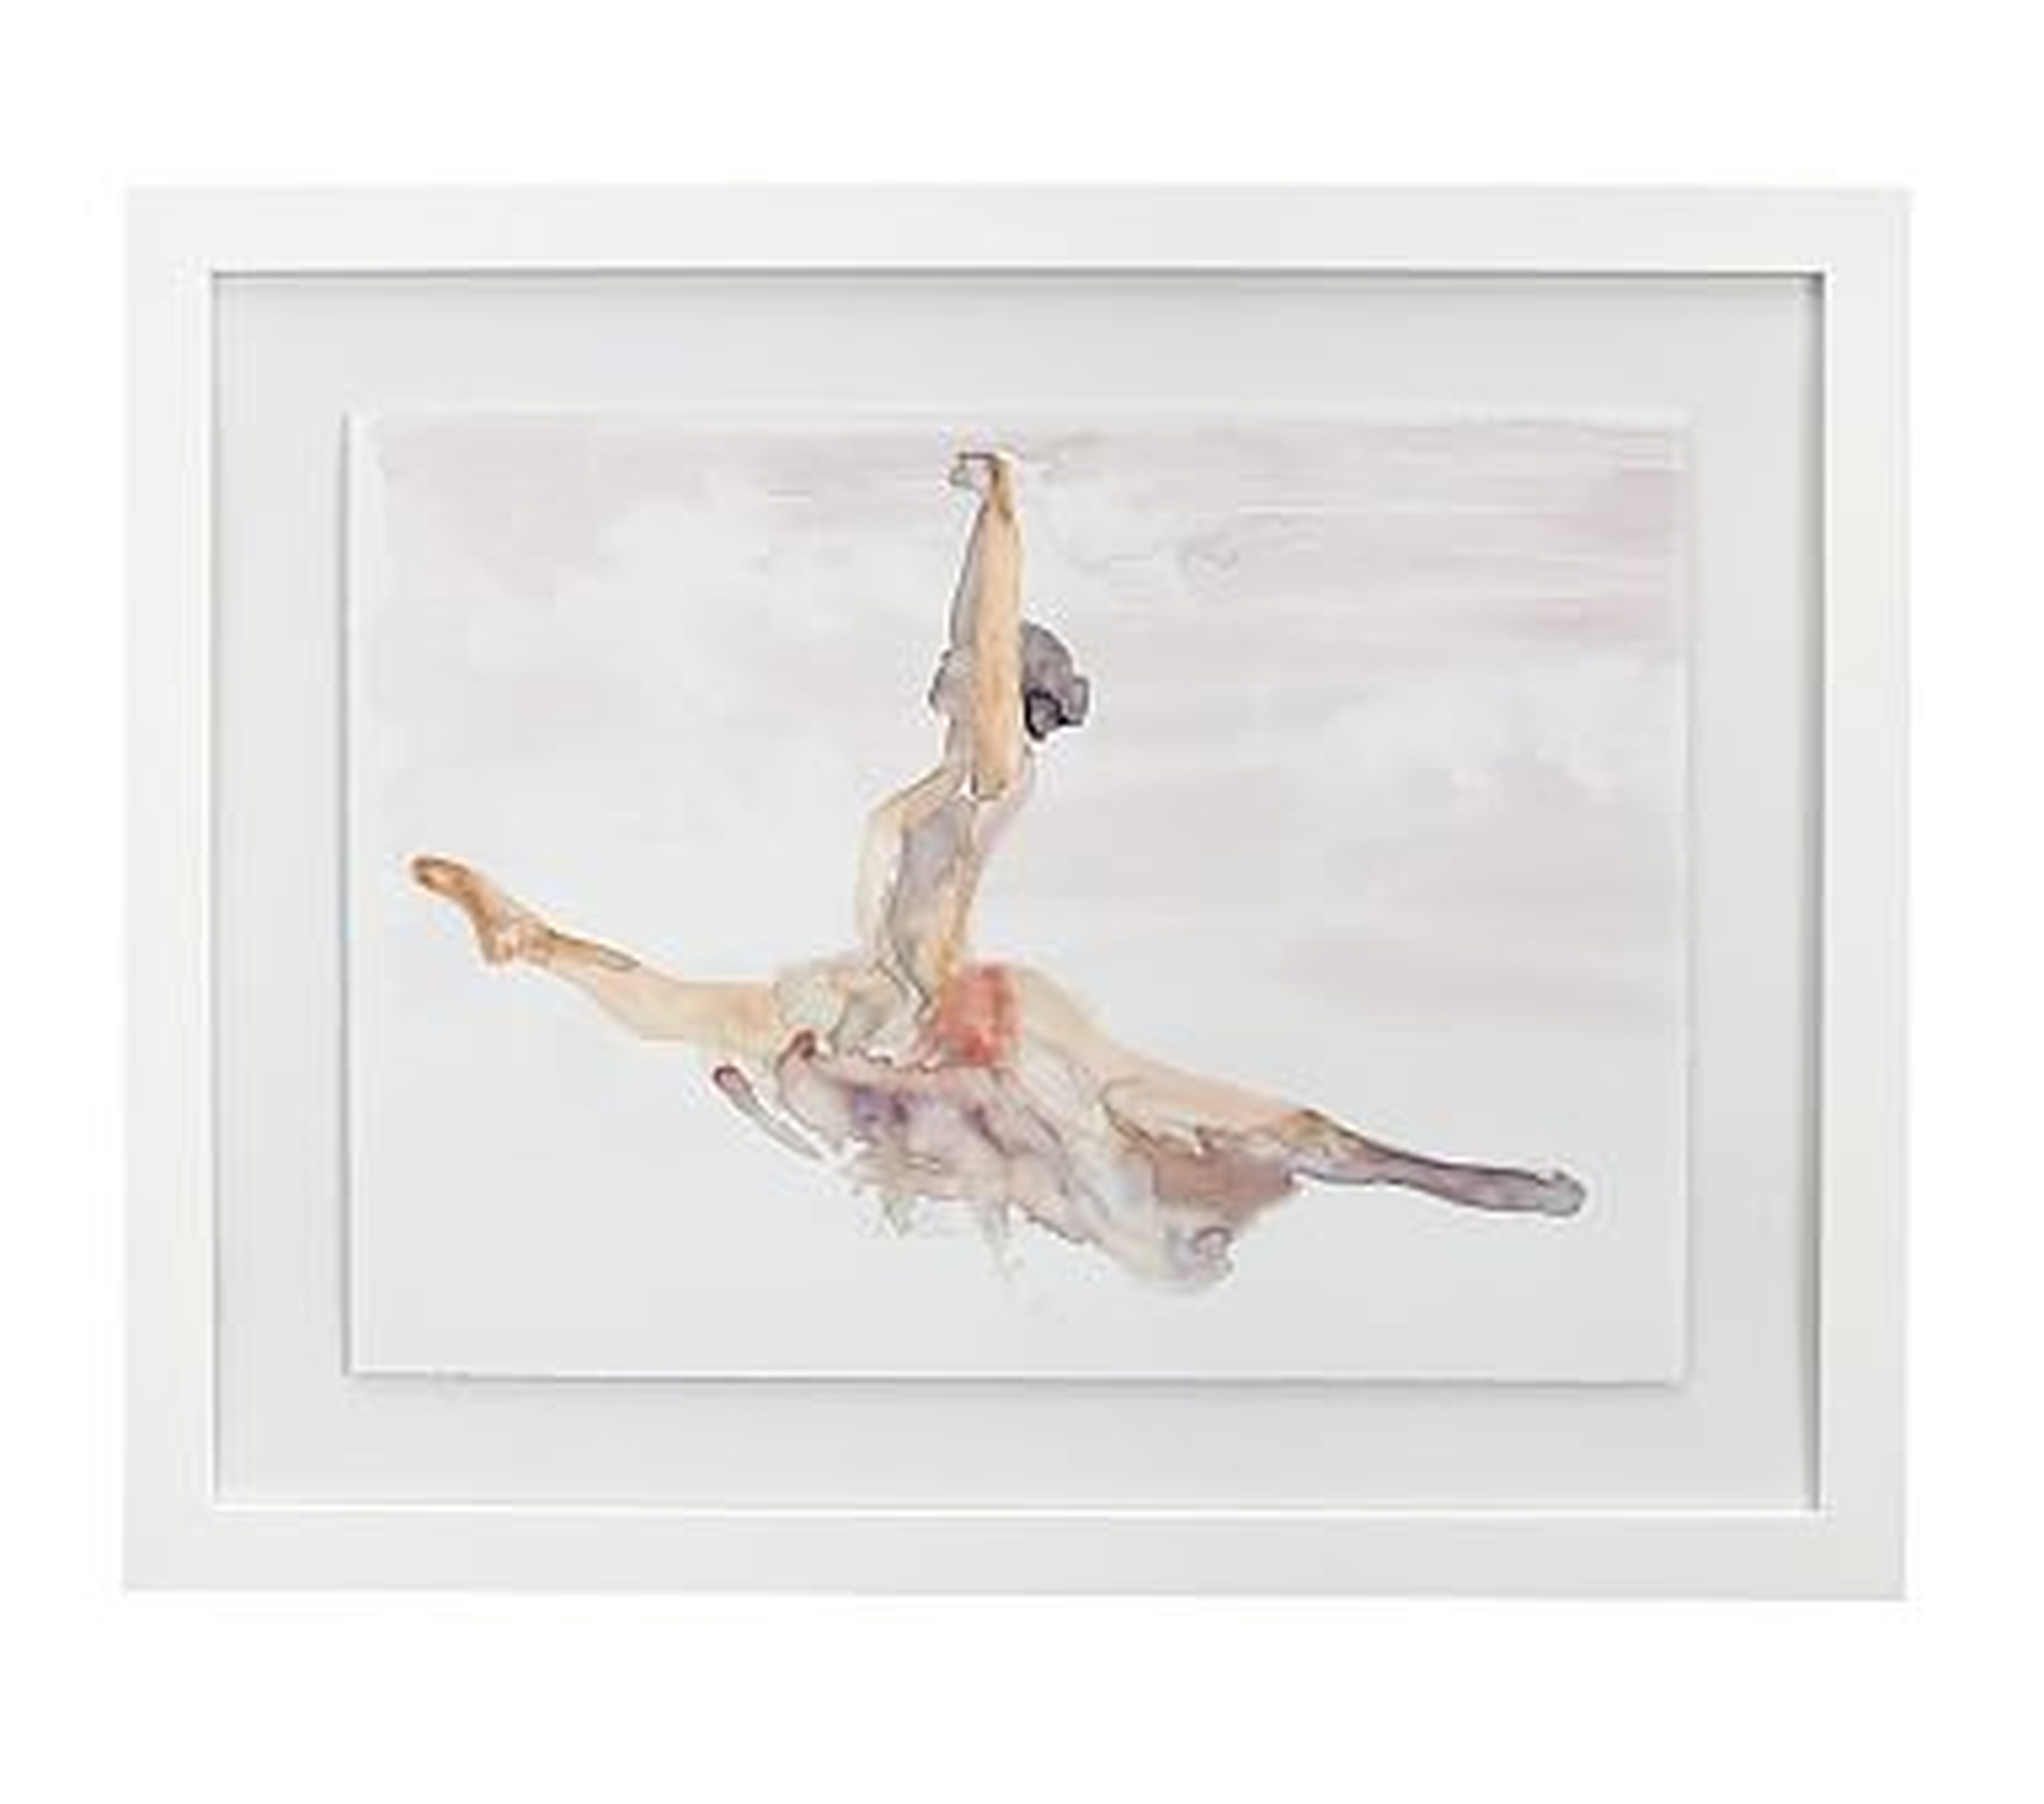 Ballet Grand Jete Framed Artwork, 24x19 - Pottery Barn Kids